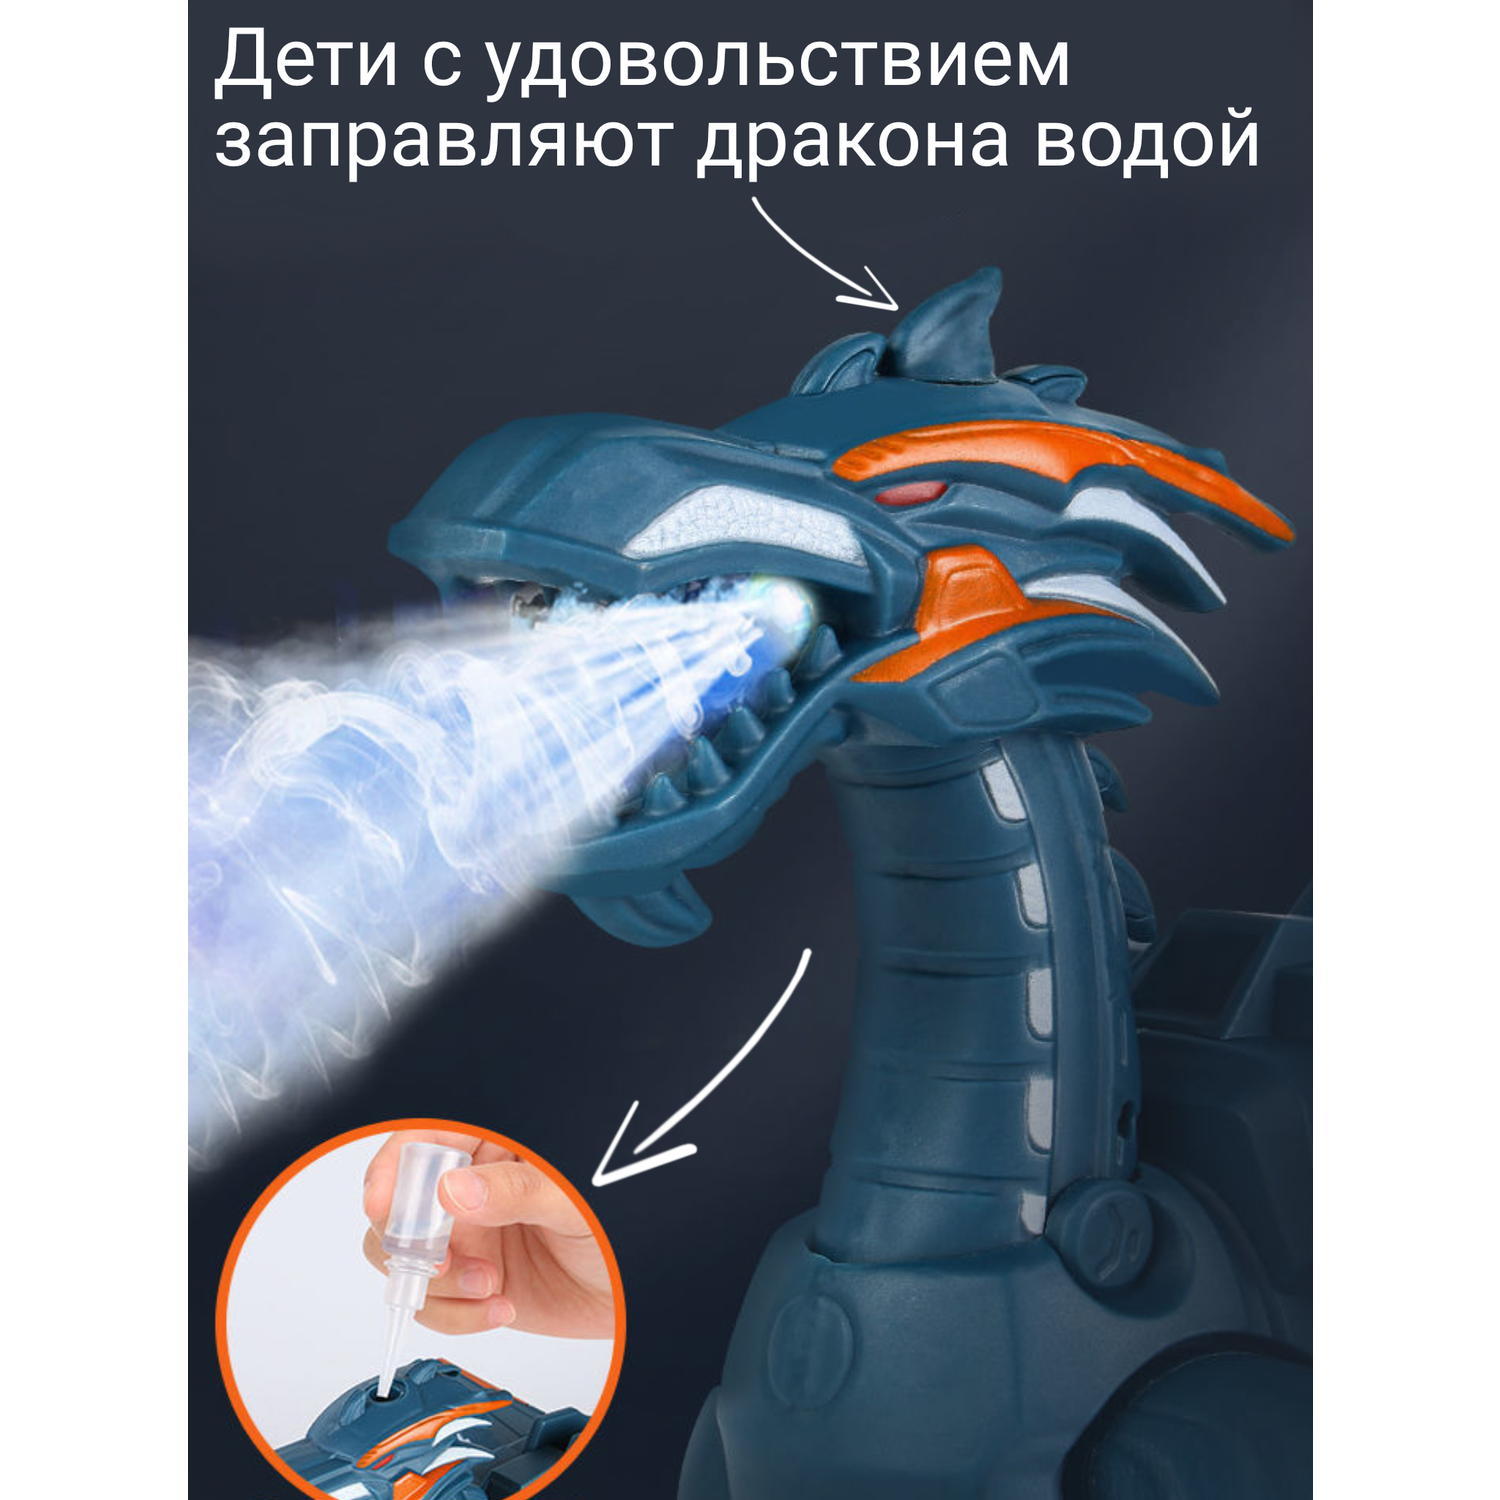 Интерактивный дракон робот FAVORITSTAR DESIGN огнедышащий с паром движение звук свет - фото 5